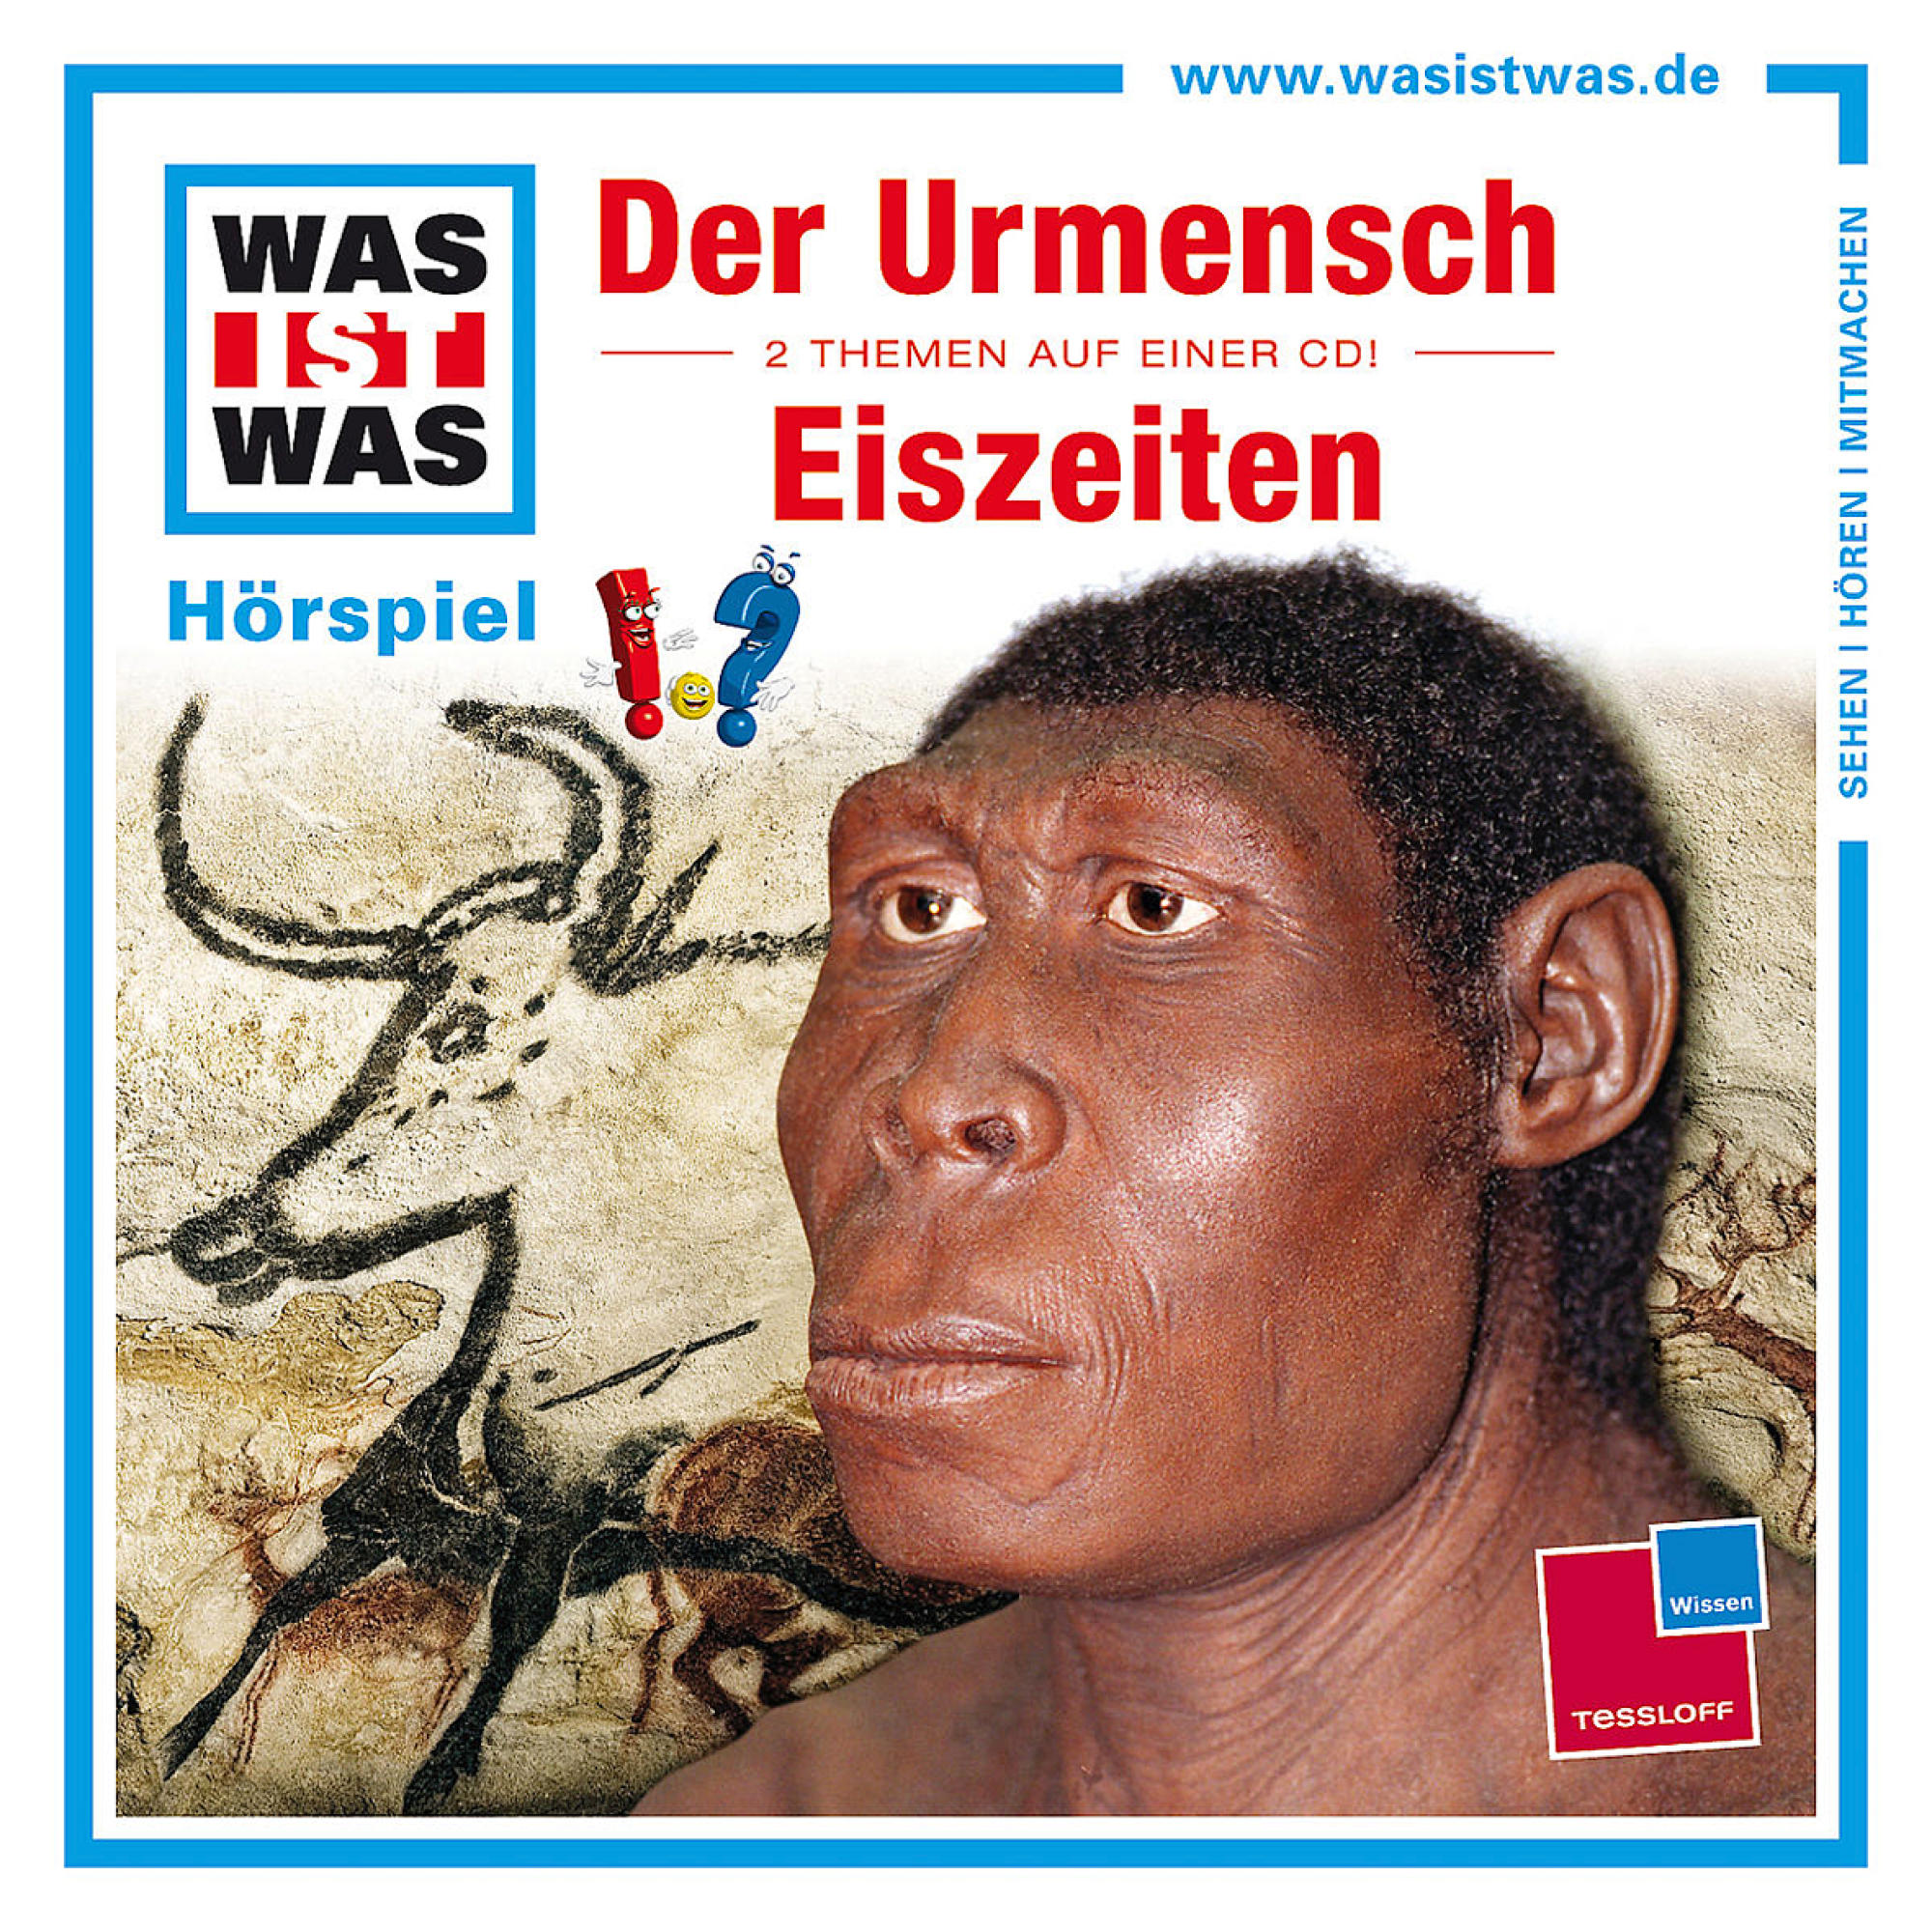 WAS: IST WAS - (CD) Urmensch Eiszeiten / Der